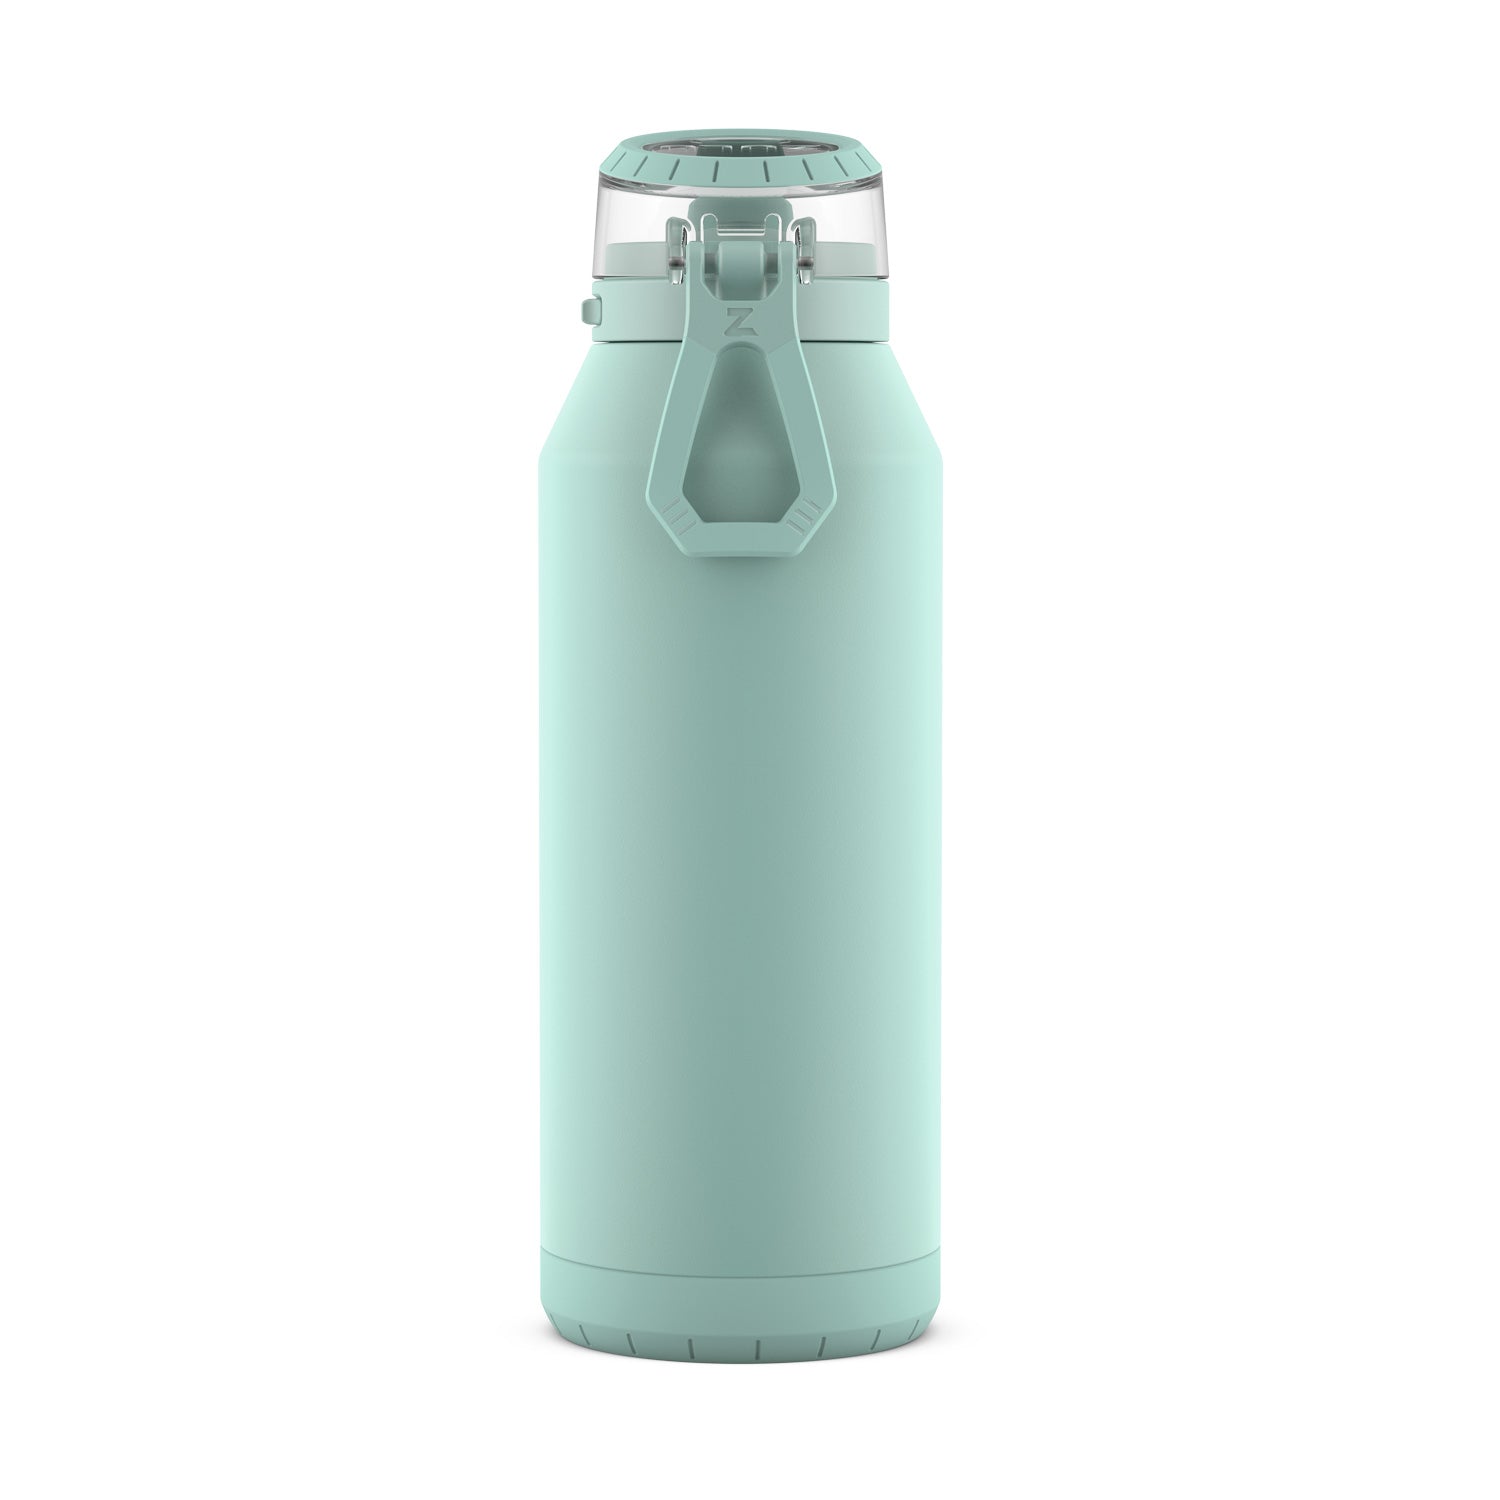 Zulu Swift 32oz Stainless Steel Water Bottle - Mint Green : Target